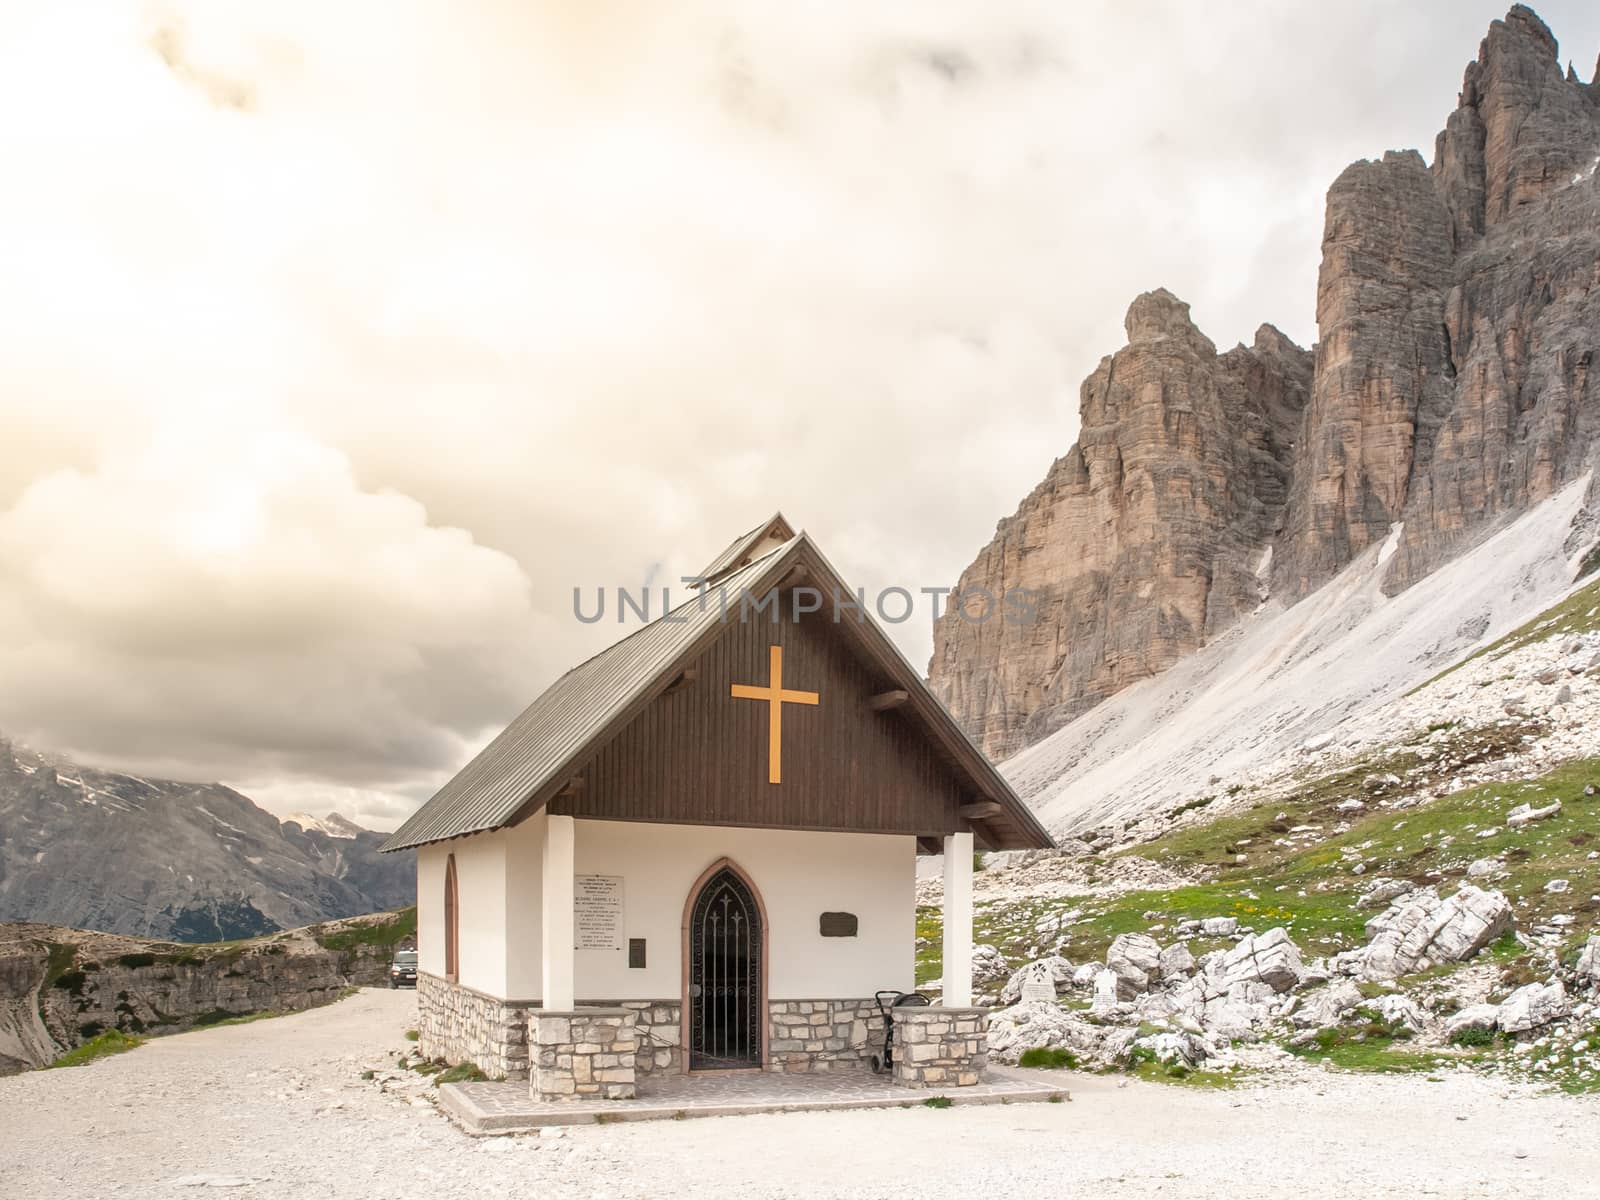 Small mountain chapel, Cappella degli Alpini, at Tre Cime di Lavaredo, Dolomites, Italy by pyty